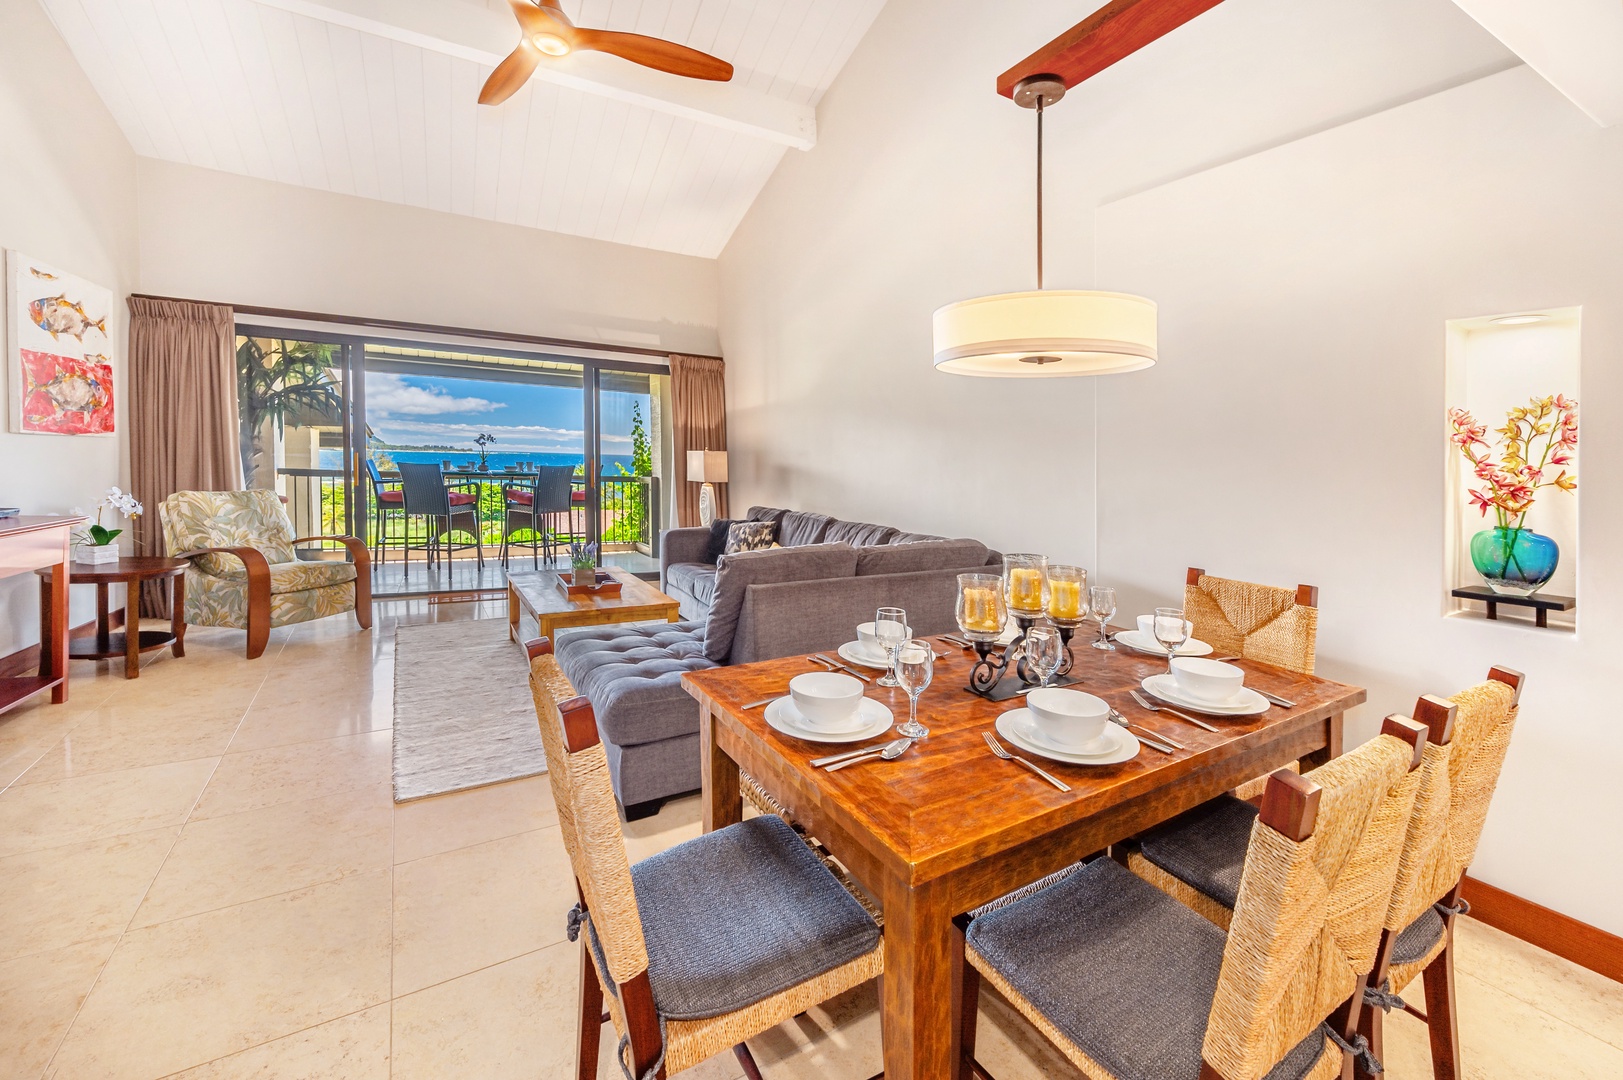 Princeville Vacation Rentals, Hanalei Bay Resort 7307 - Dining area has Ocean views